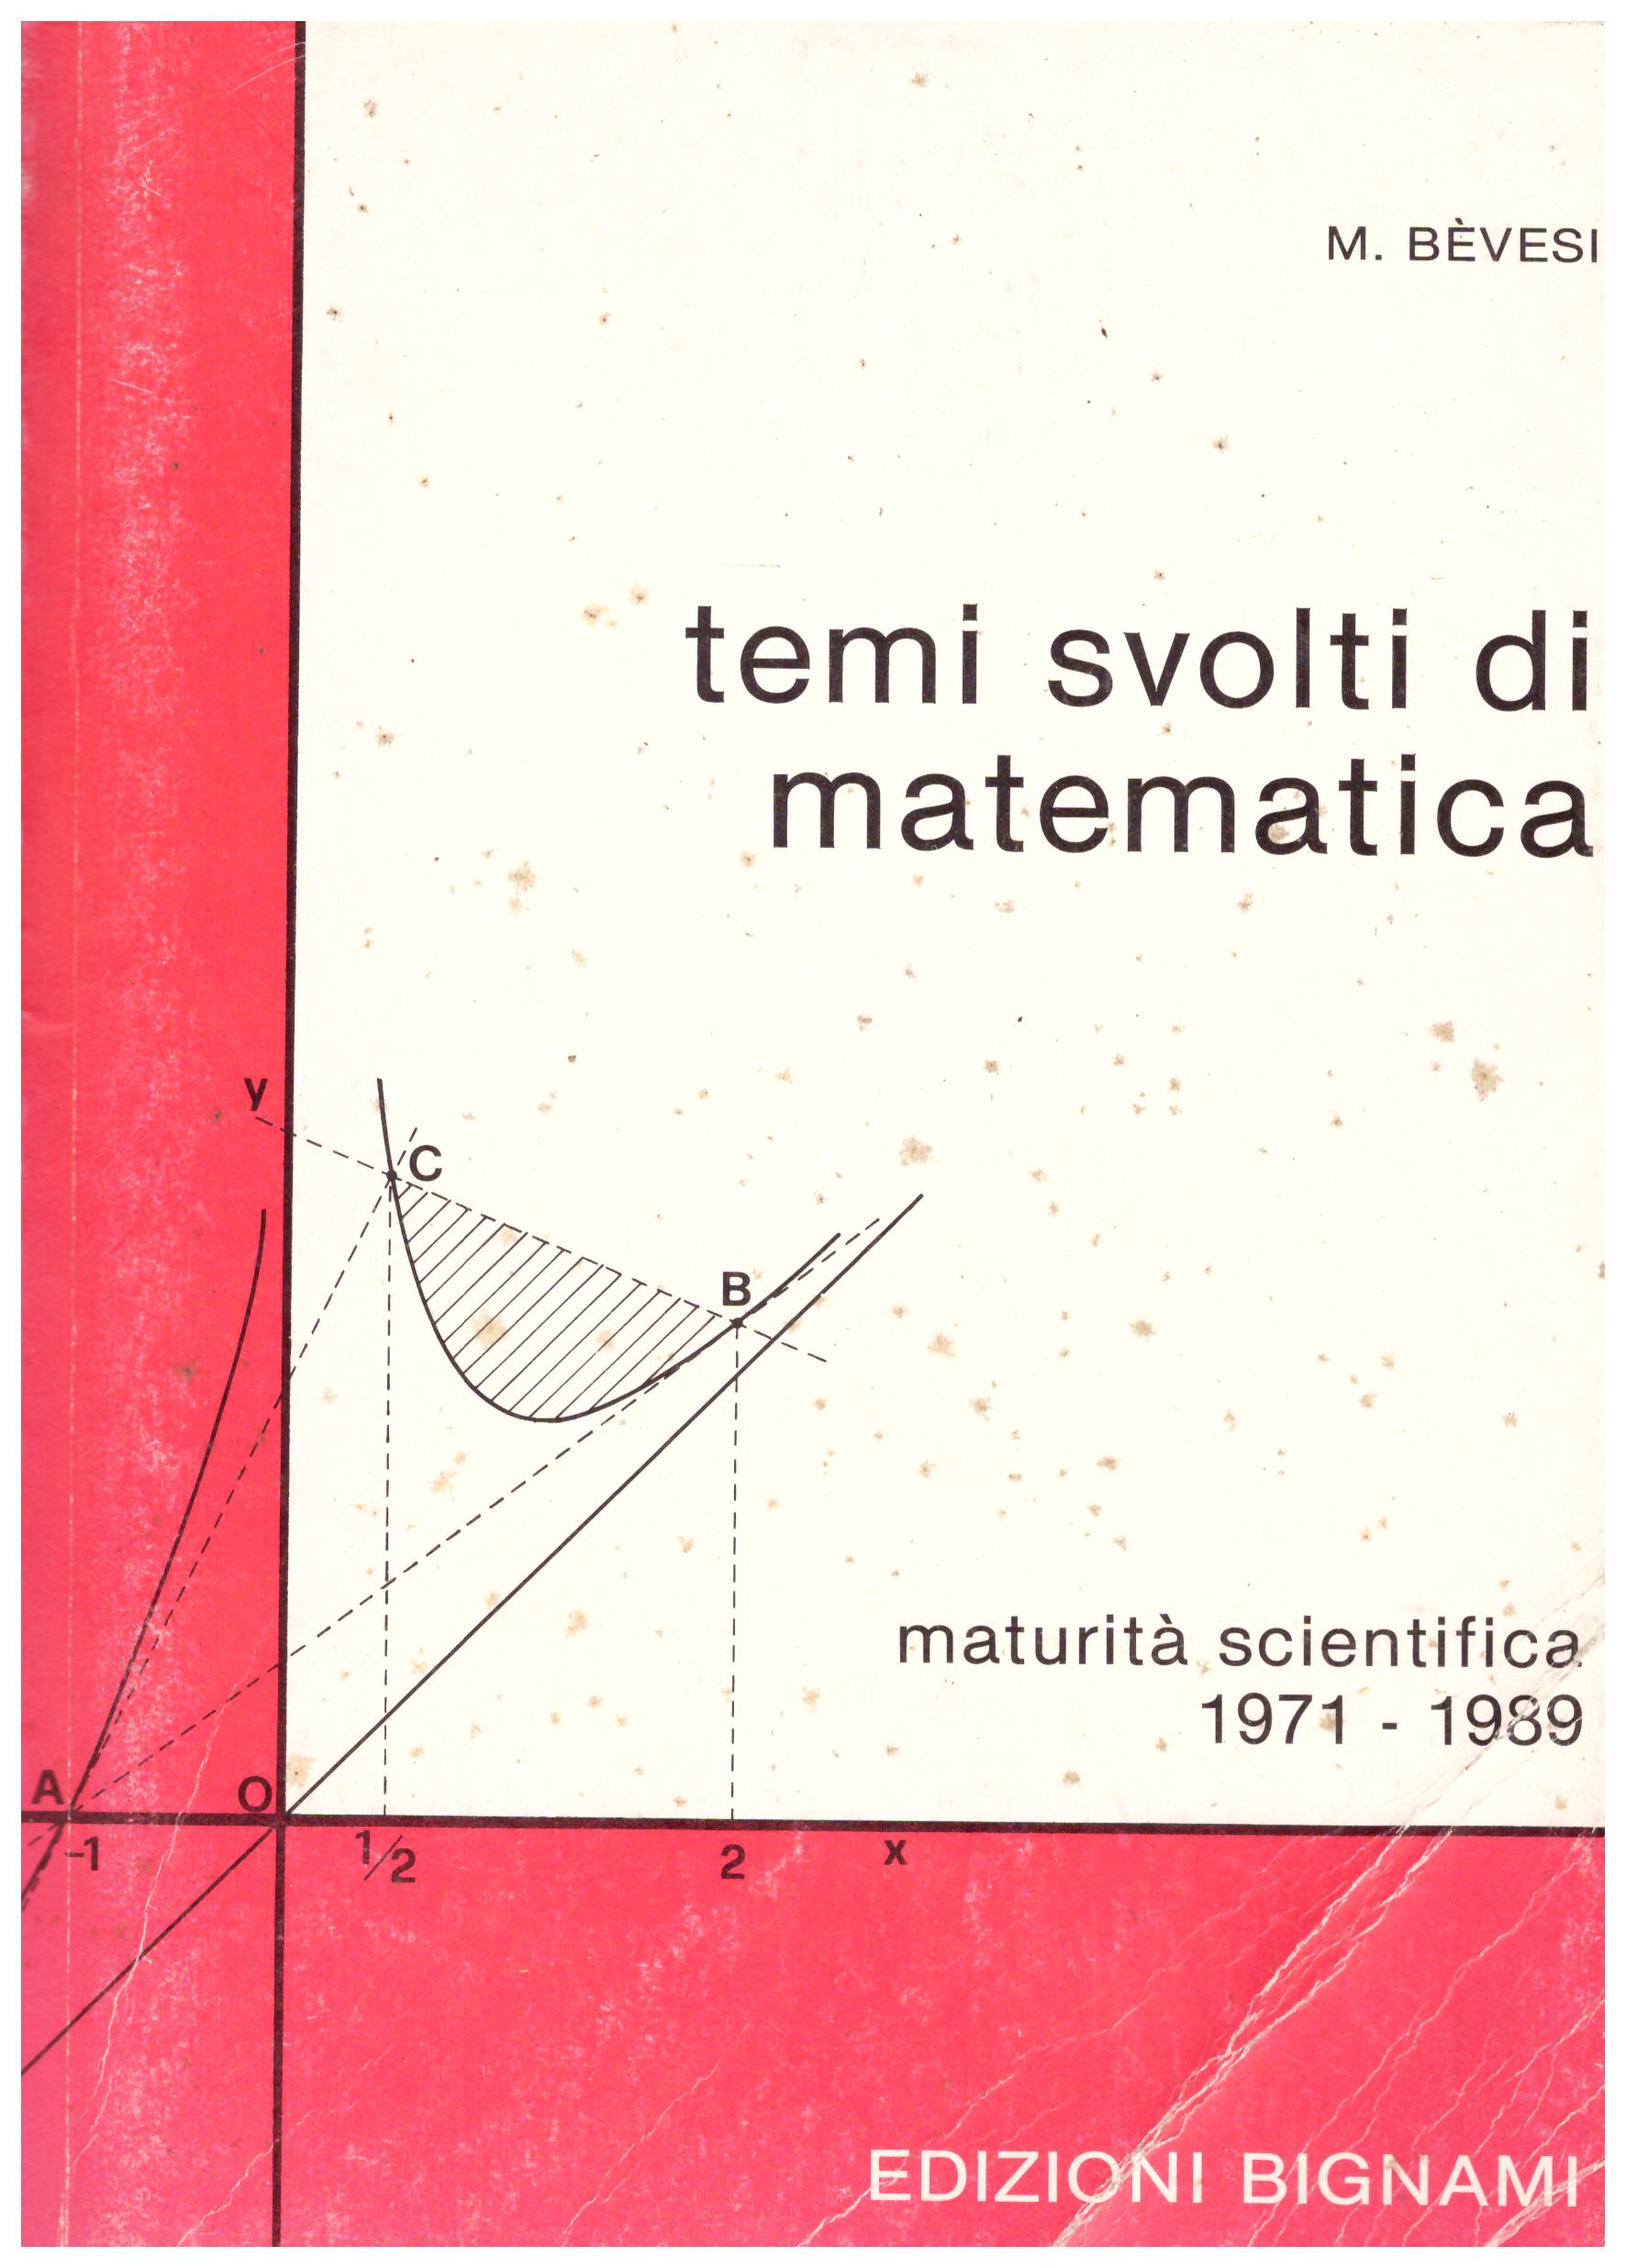 Titolo: Temi svolti di matematica     Autore: M. Bevesi    Editore: Edizioni bignami